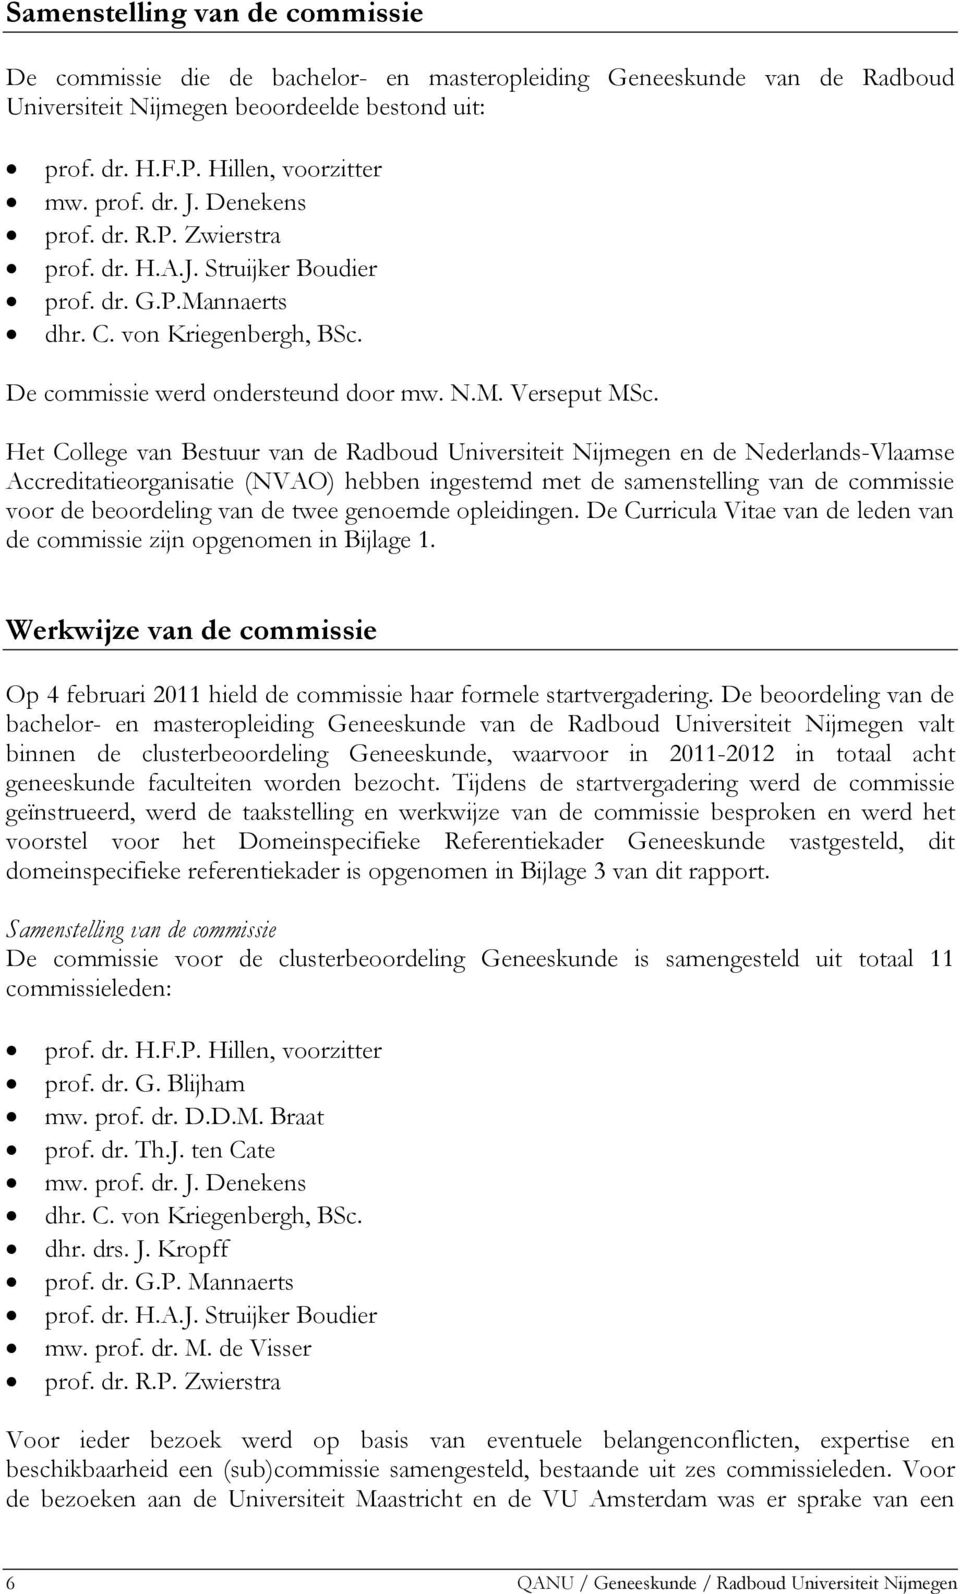 Het College van Bestuur van de Radboud Universiteit Nijmegen en de Nederlands-Vlaamse Accreditatieorganisatie (NVAO) hebben ingestemd met de samenstelling van de commissie voor de beoordeling van de